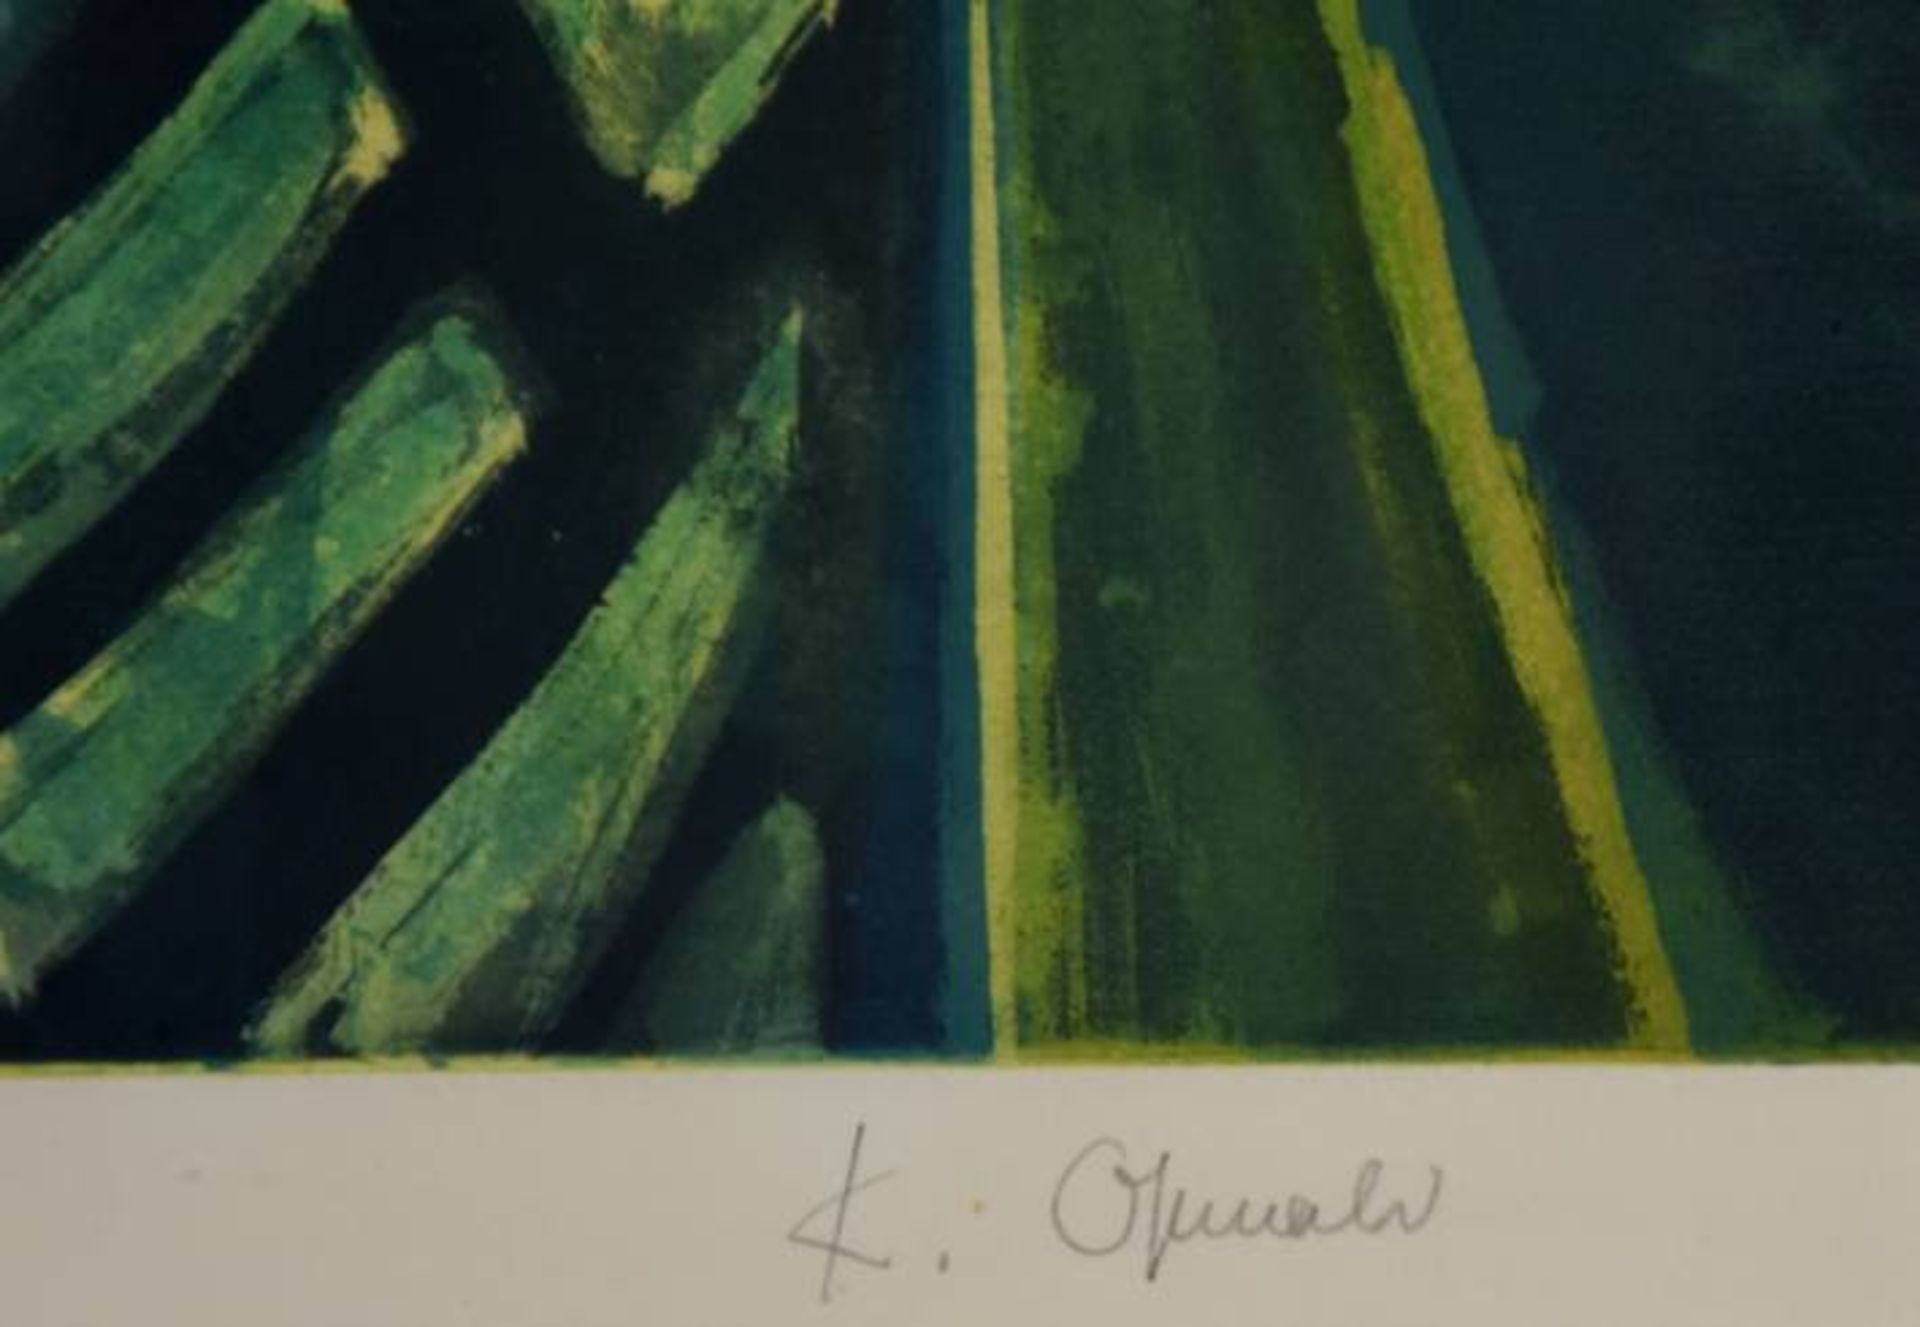 OSSWALD Karl (1925-1972 Singen) "Teller mit Fischen" in Grünblatönen, Farbgraphik, rechts unten - Bild 5 aus 5